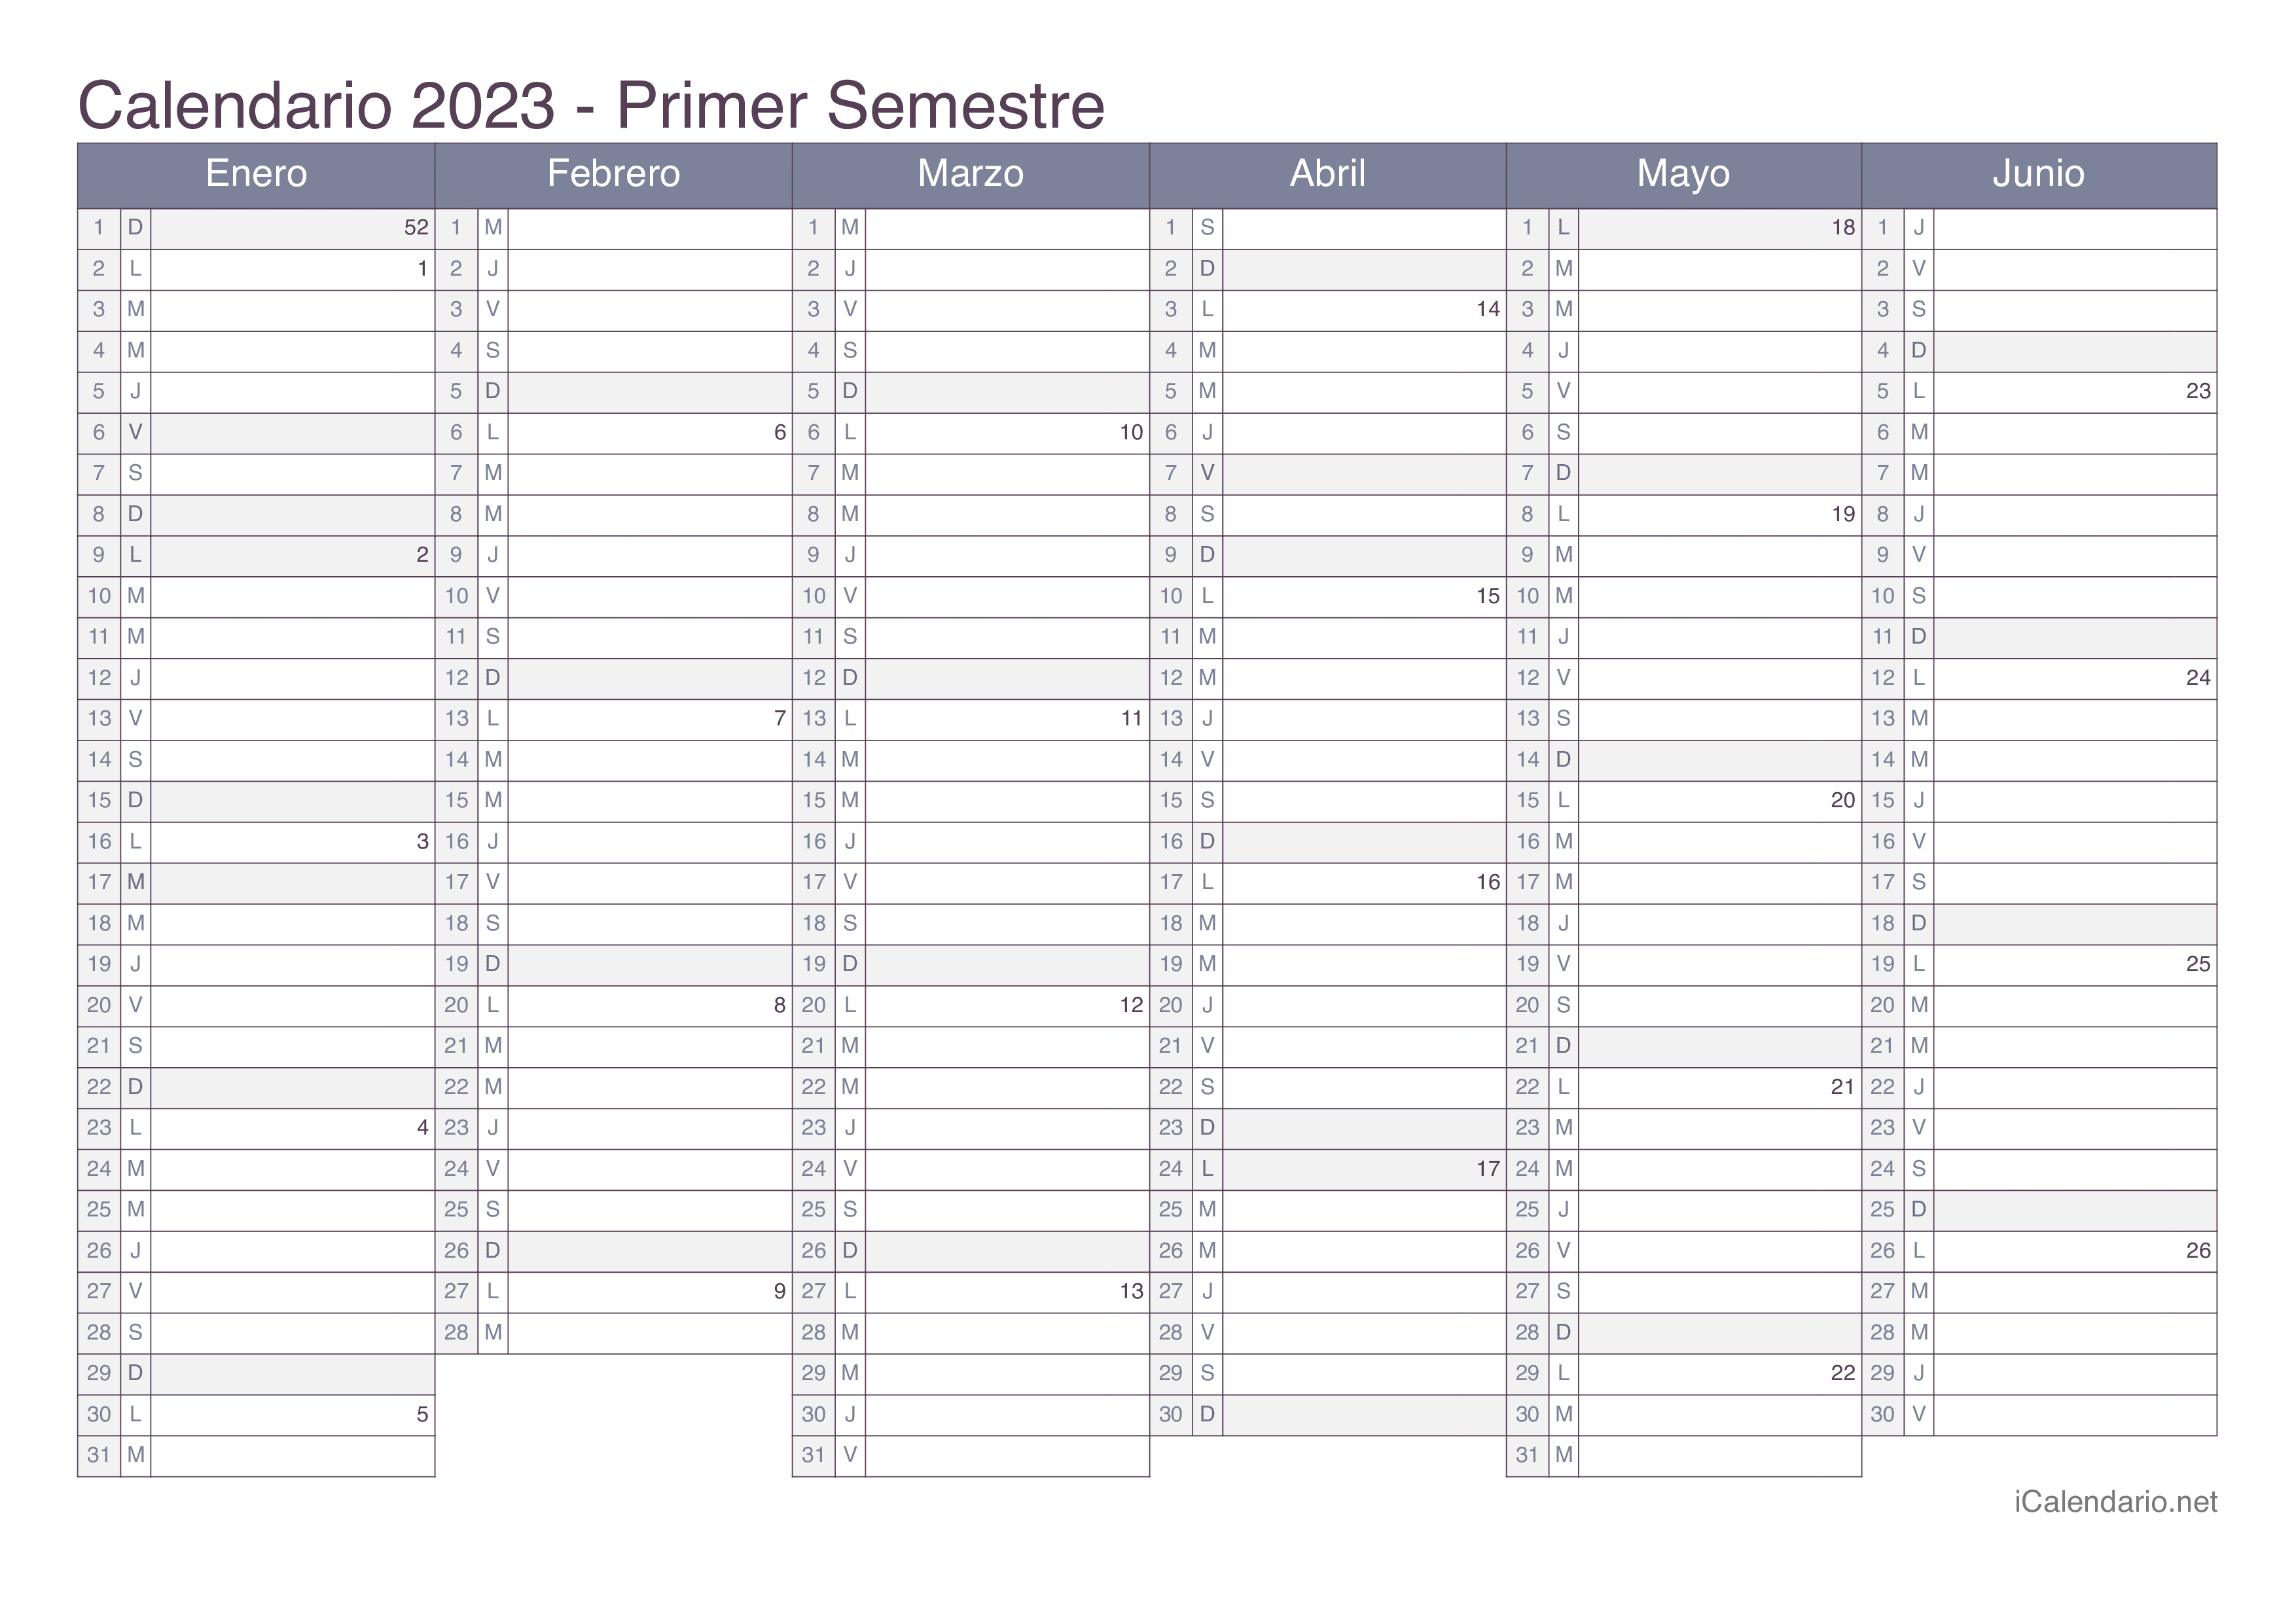 Calendario por semestre com números da semana 2023 - Office